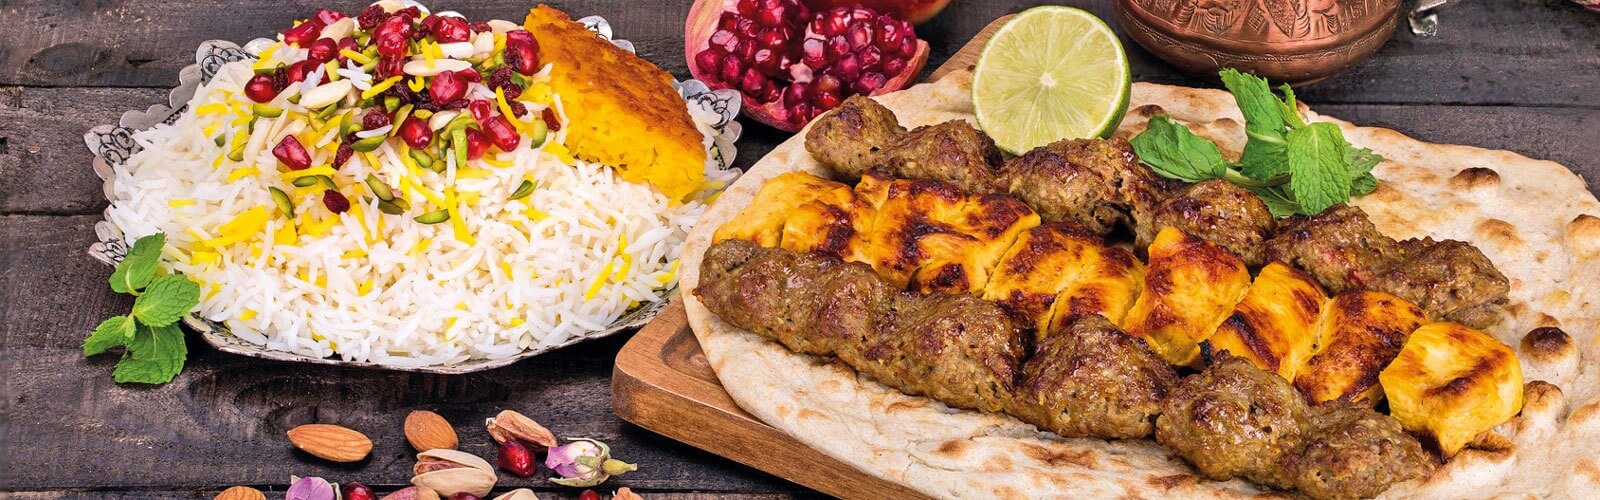 1001 Nacht - Arabische Küche